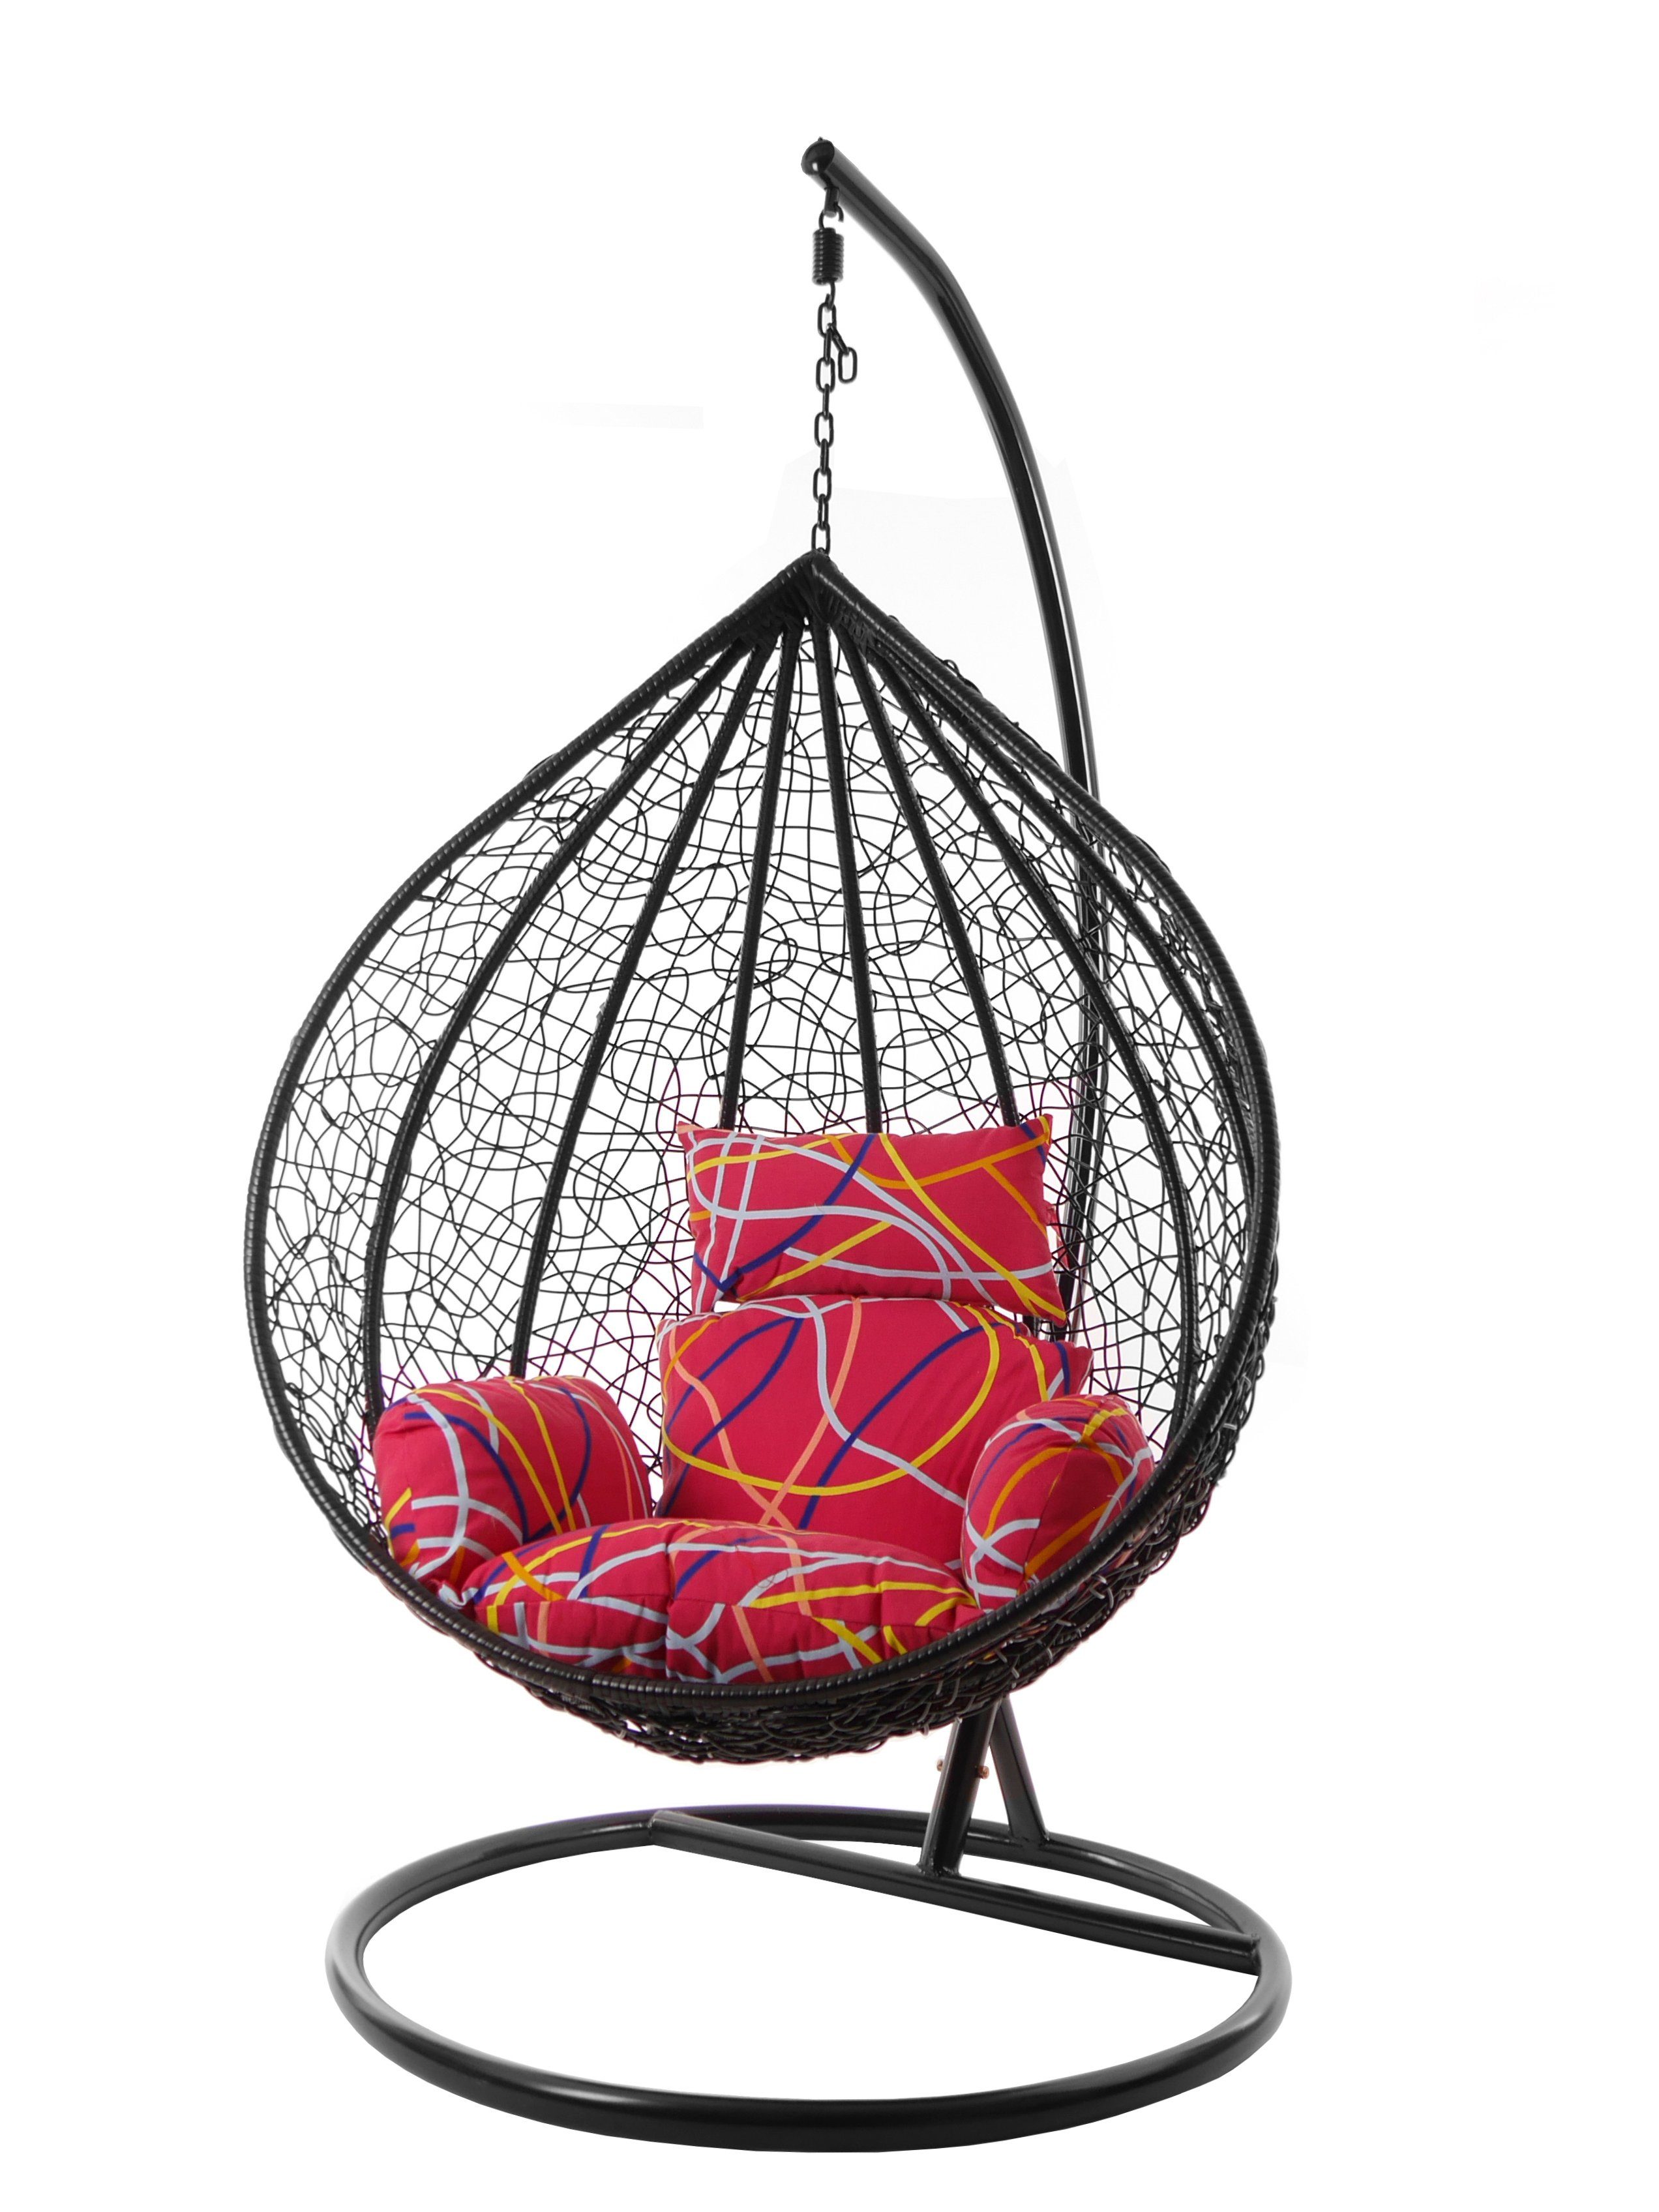 KIDEO Hängesessel Hängesessel MANACOR Chair, gemustert Kissen, Nest-Kissen abstract) bunt XXL Gestell schwarz, be mit (3021 Hängesessel Swing und